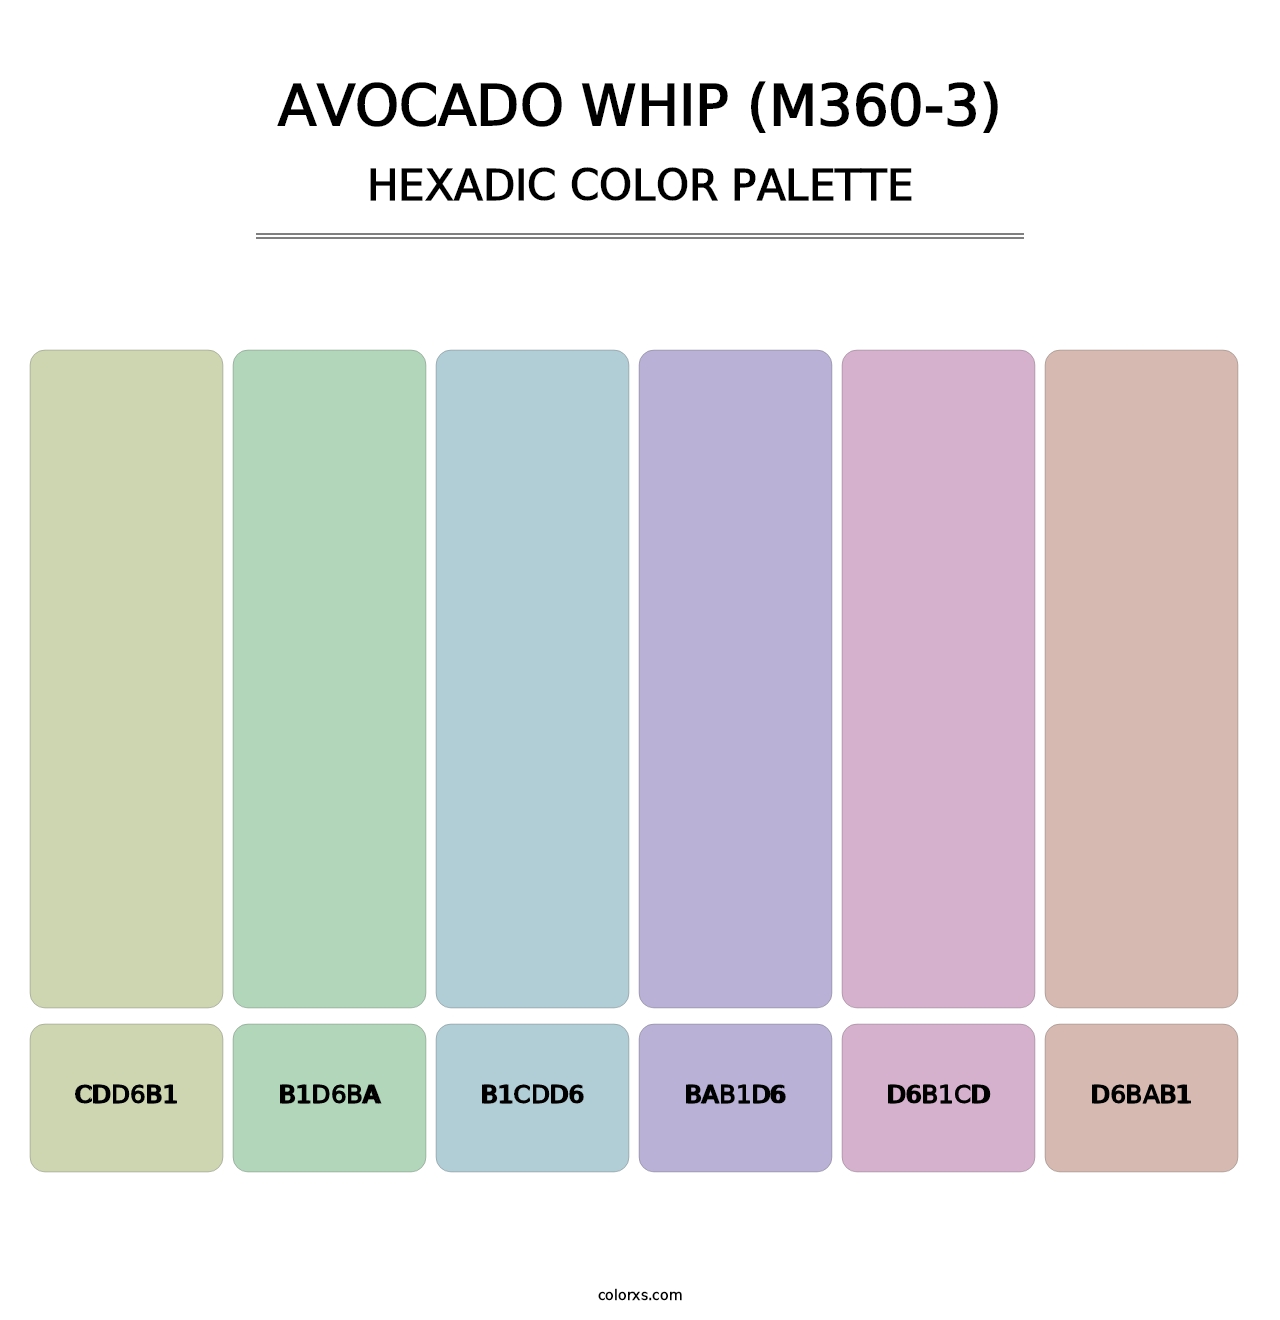 Avocado Whip (M360-3) - Hexadic Color Palette